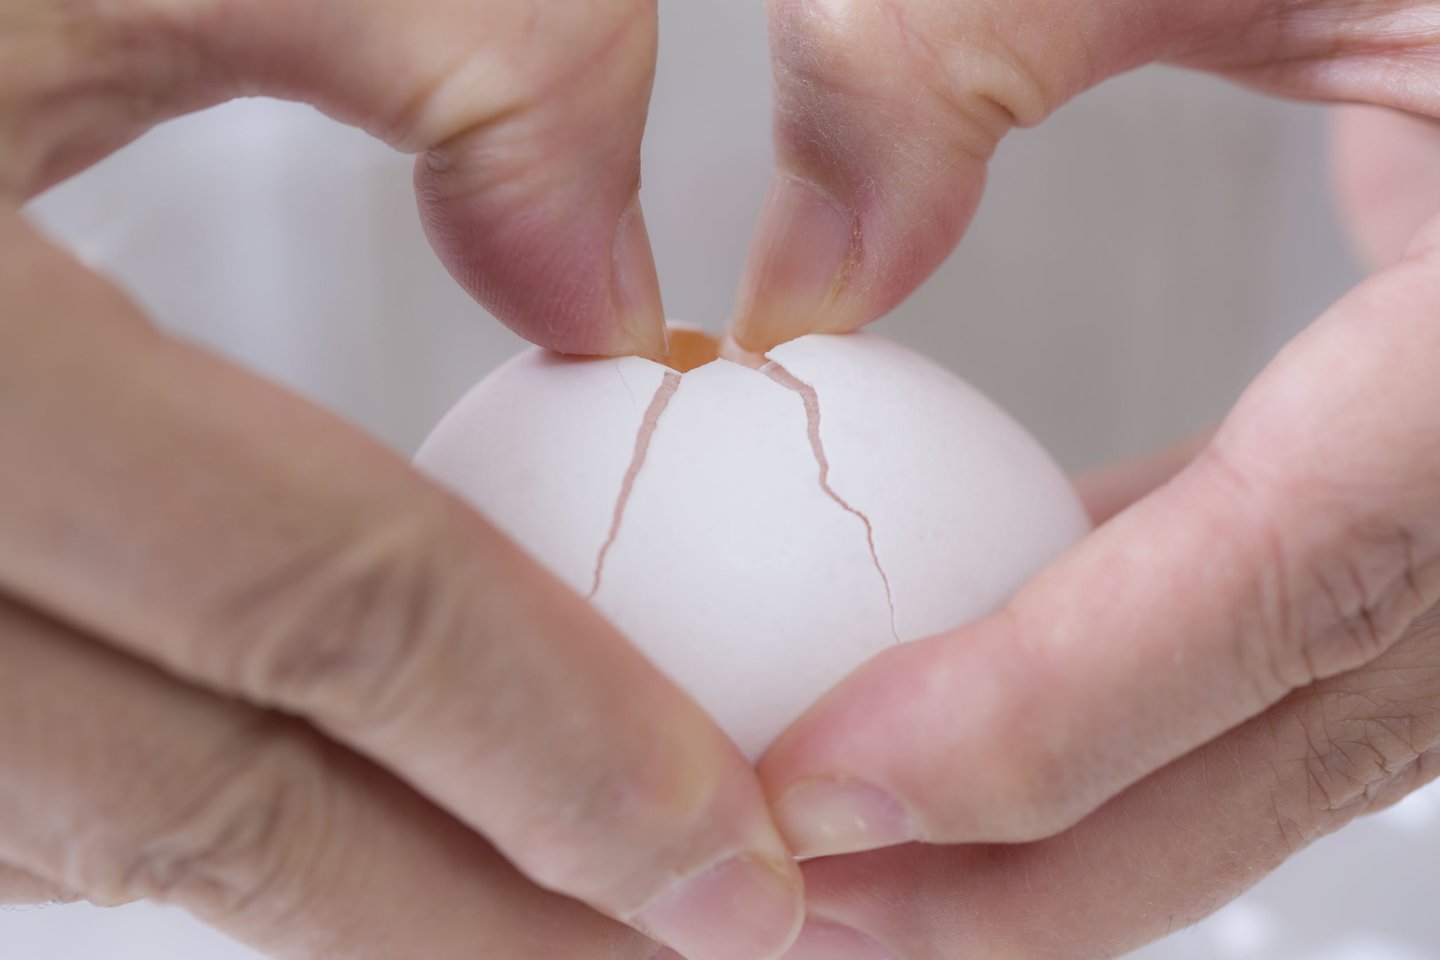 Kiaušinius parduodančių įmonių atstovai teigia, kad pramoniniuose ūkiuose mažai tikėtina situacija, kad tarp maistinių įsimaišytų apvaisintas kiaušinis.<br> 123rf nuotr.